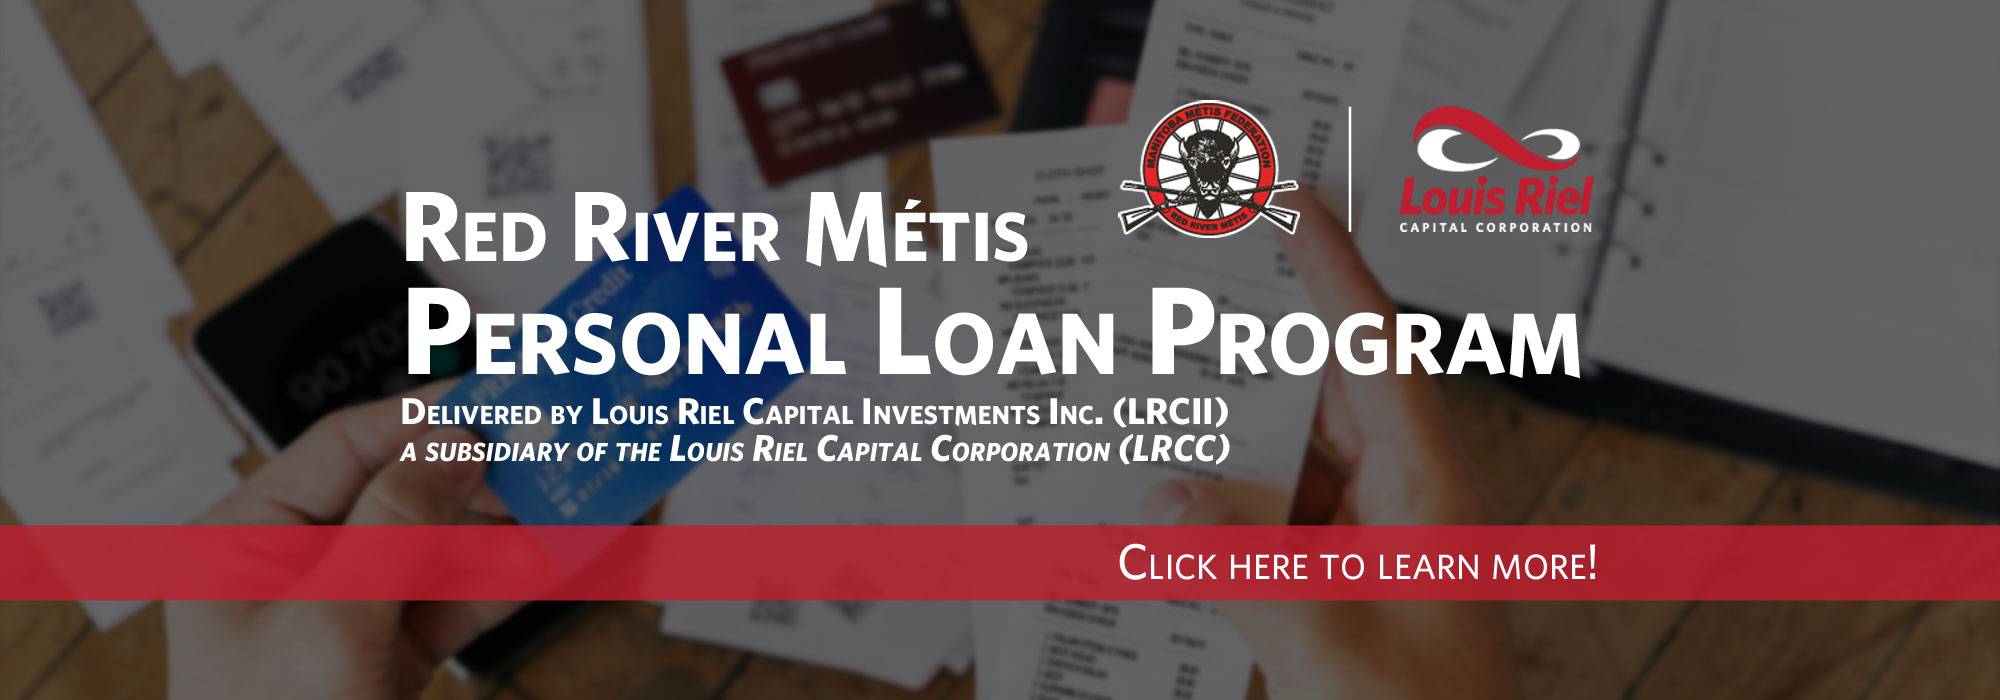 Red River Metis Personal Loan Program